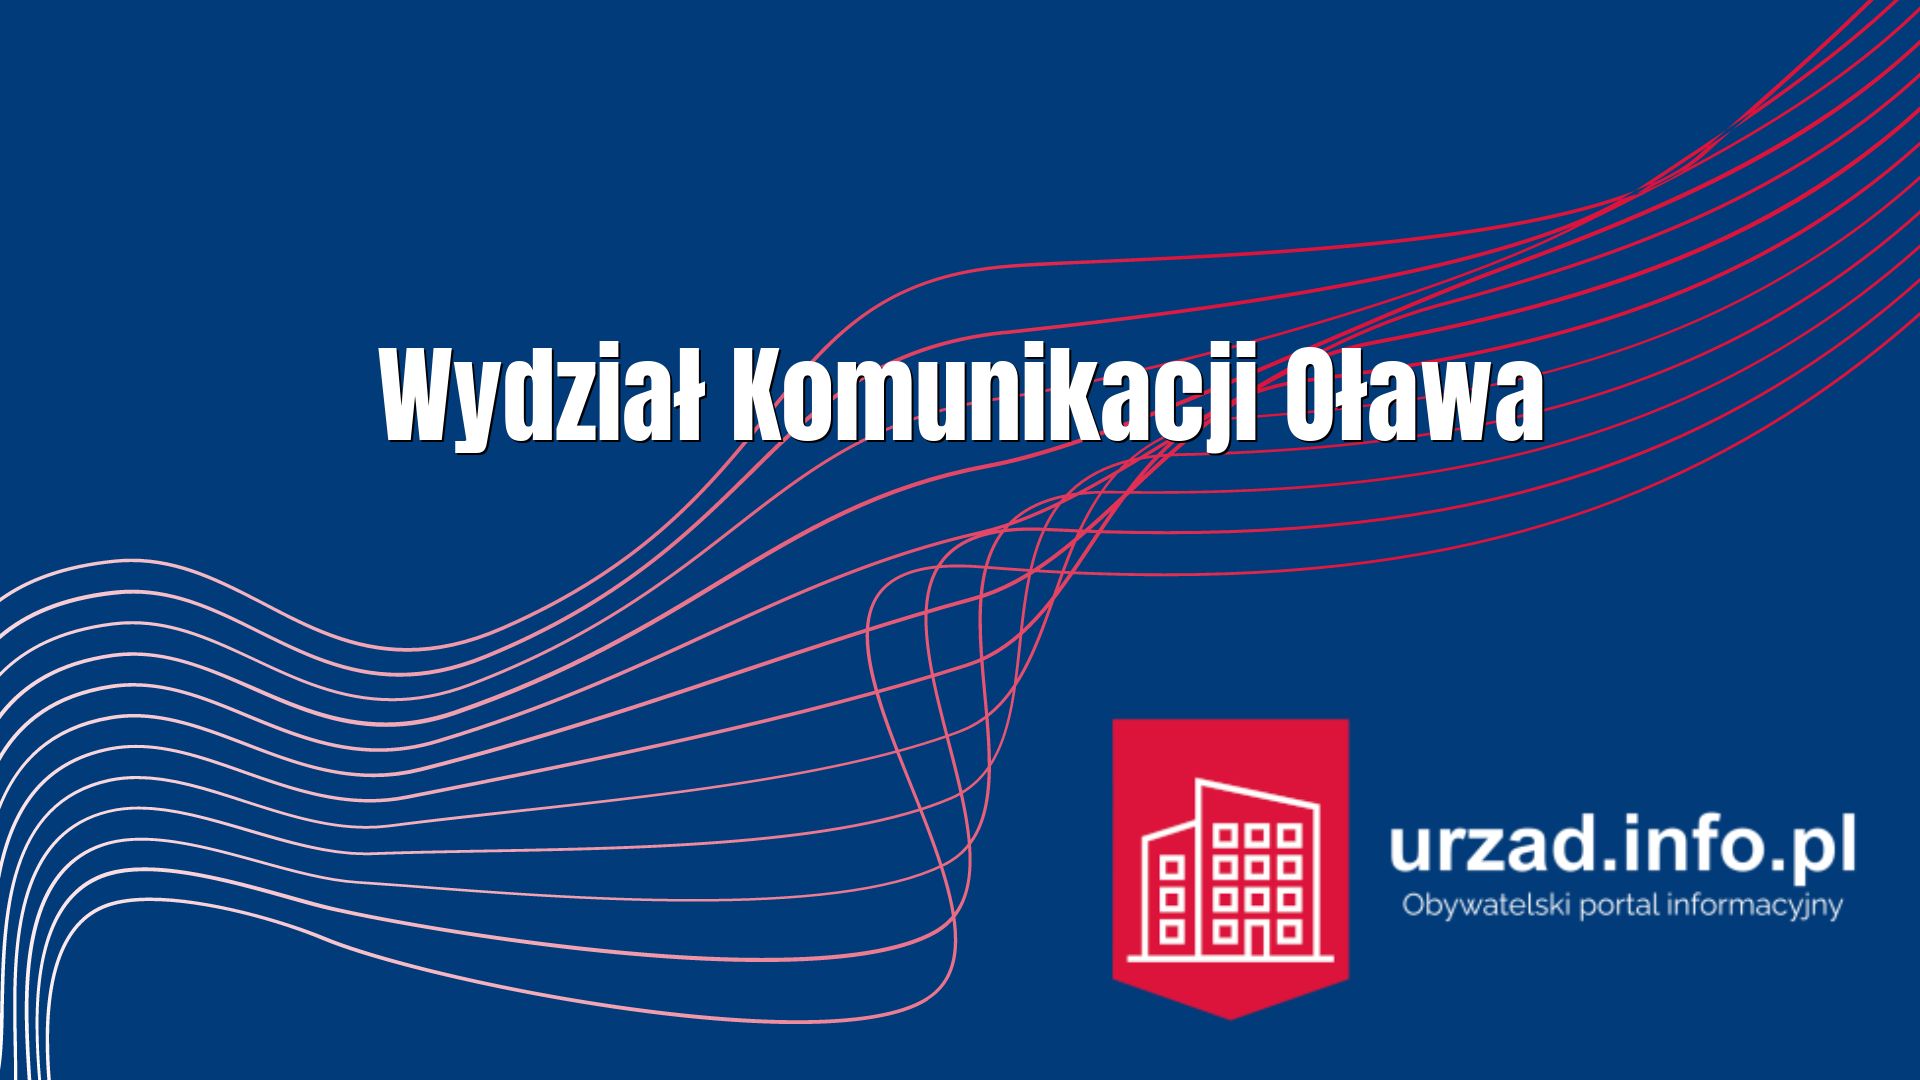 Wydział Komunikacji Oława